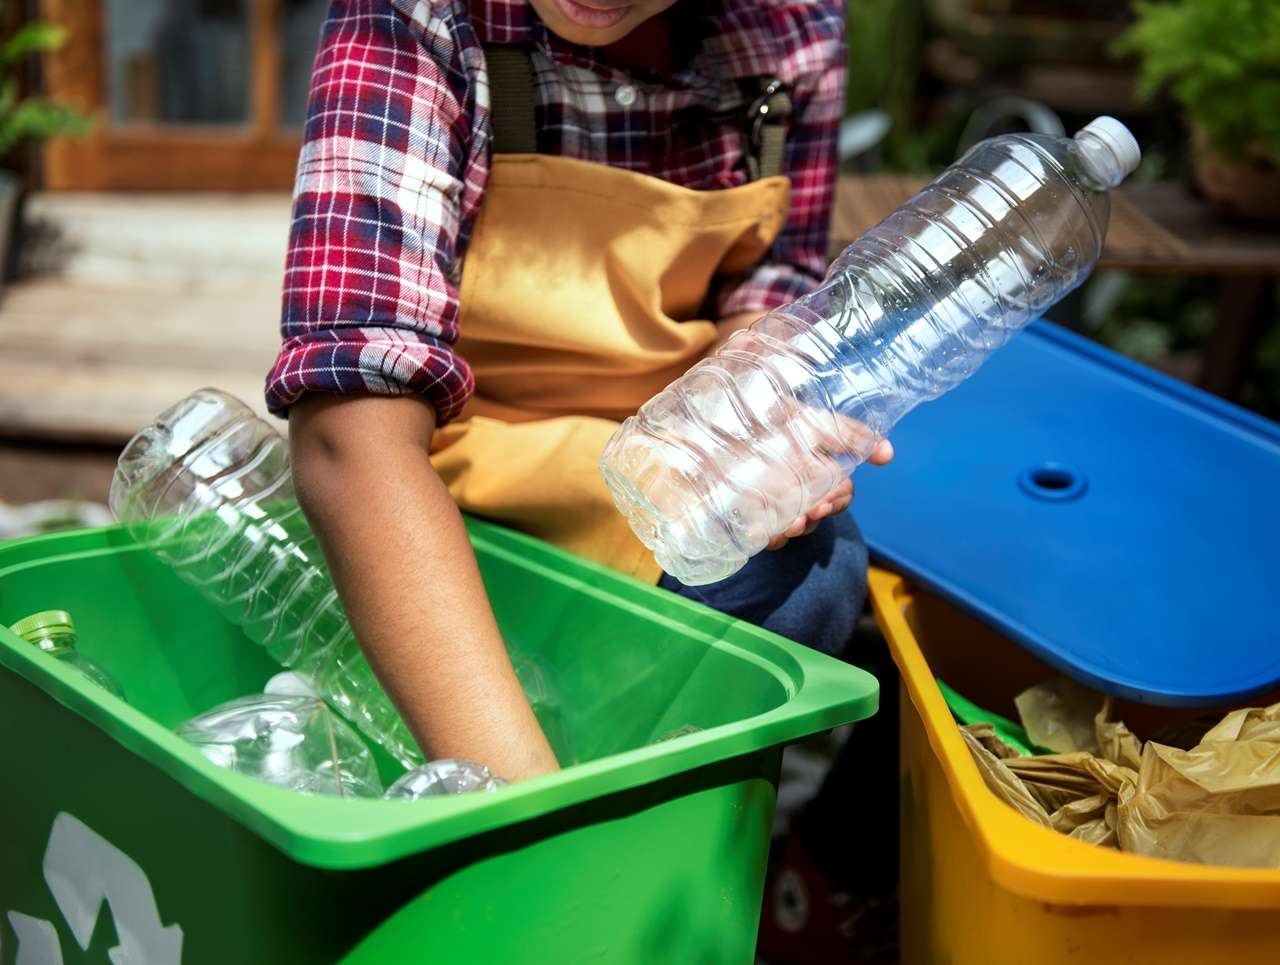 La mitad de los residuos domiciliarios son orgánicos y pueden ser reciclados, destacan especialistas